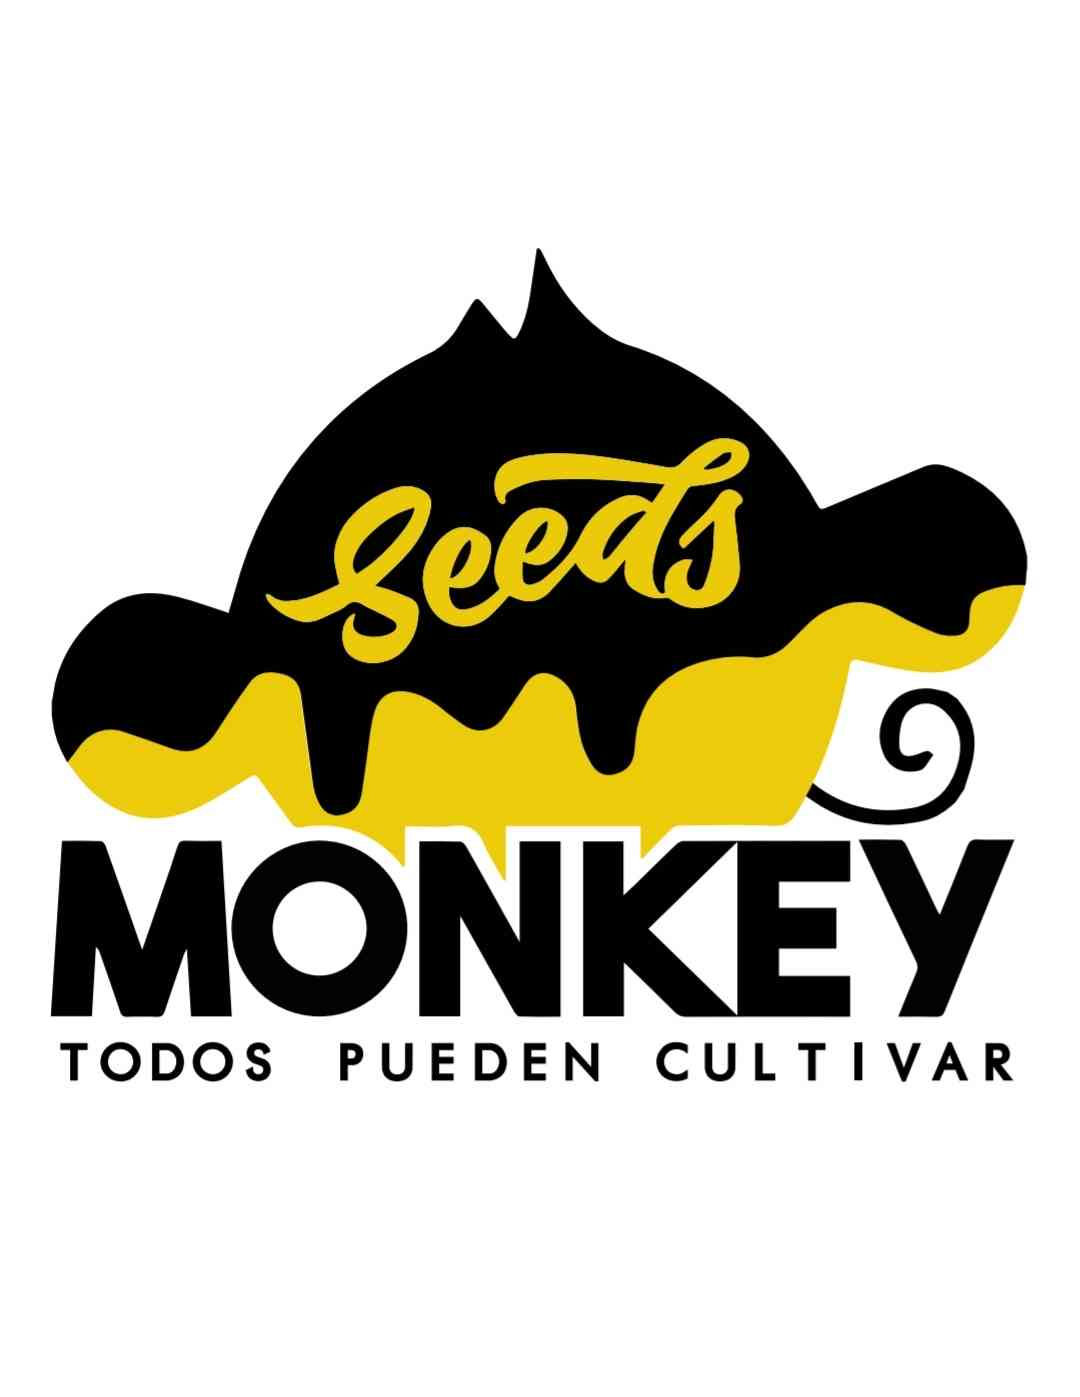 SeedsMonkey